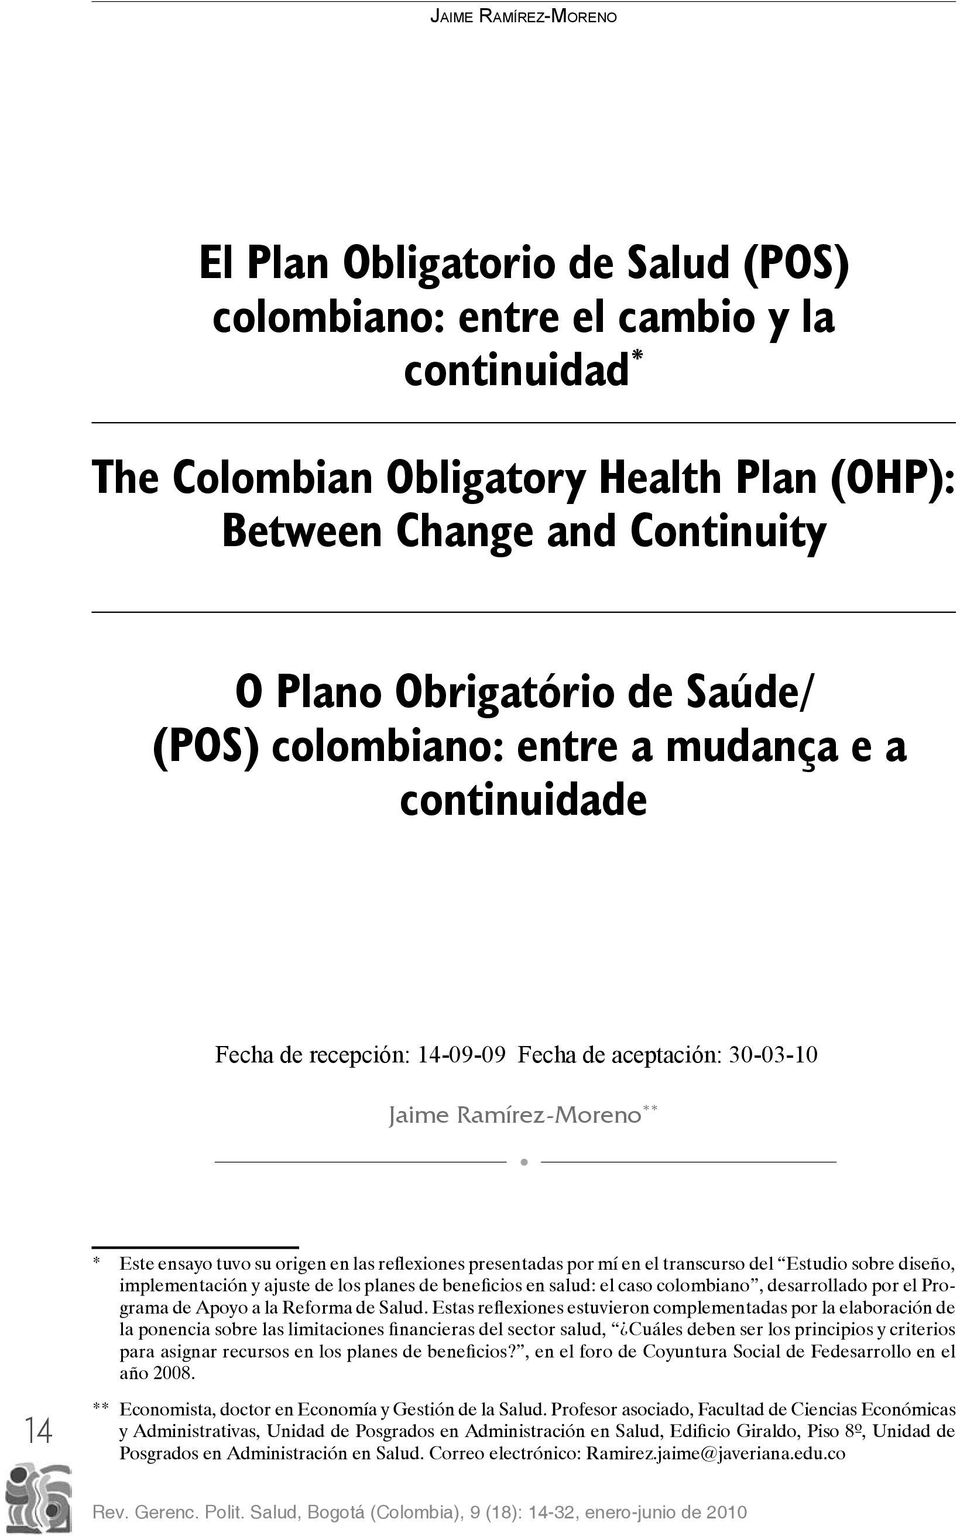 reflexiones presentadas por mí en el transcurso del Estudio sobre diseño, implementación y ajuste de los planes de beneficios en salud: el caso colombiano, desarrollado por el Programa de Apoyo a la